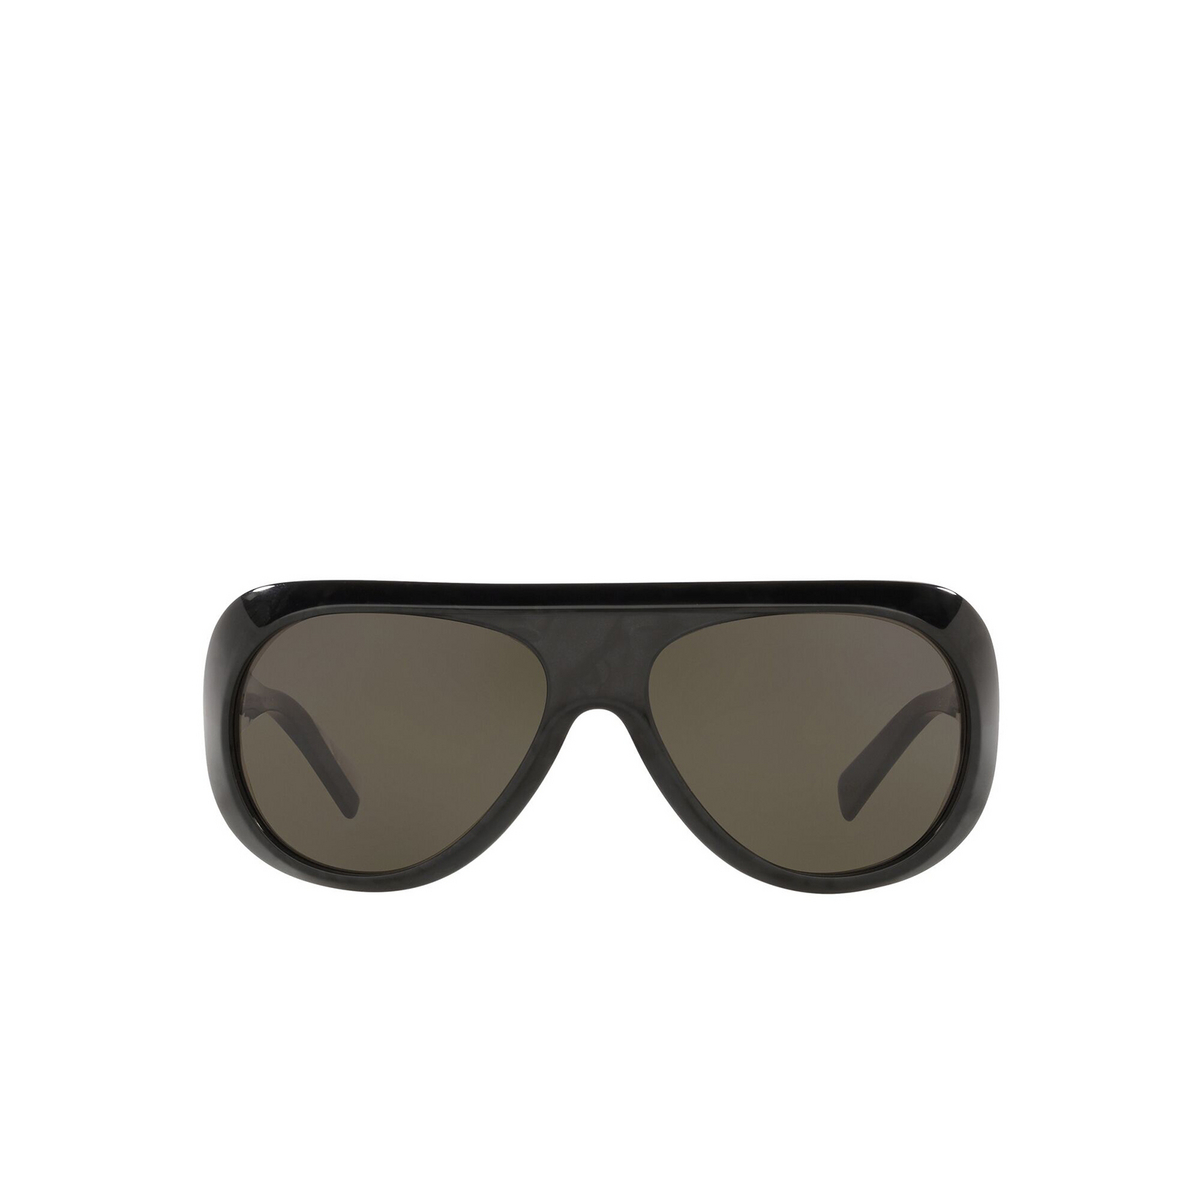 Alain Mikli® Aviator Sunglasses: Marmion A05051 color Noir Mikli 001/82 - front view.